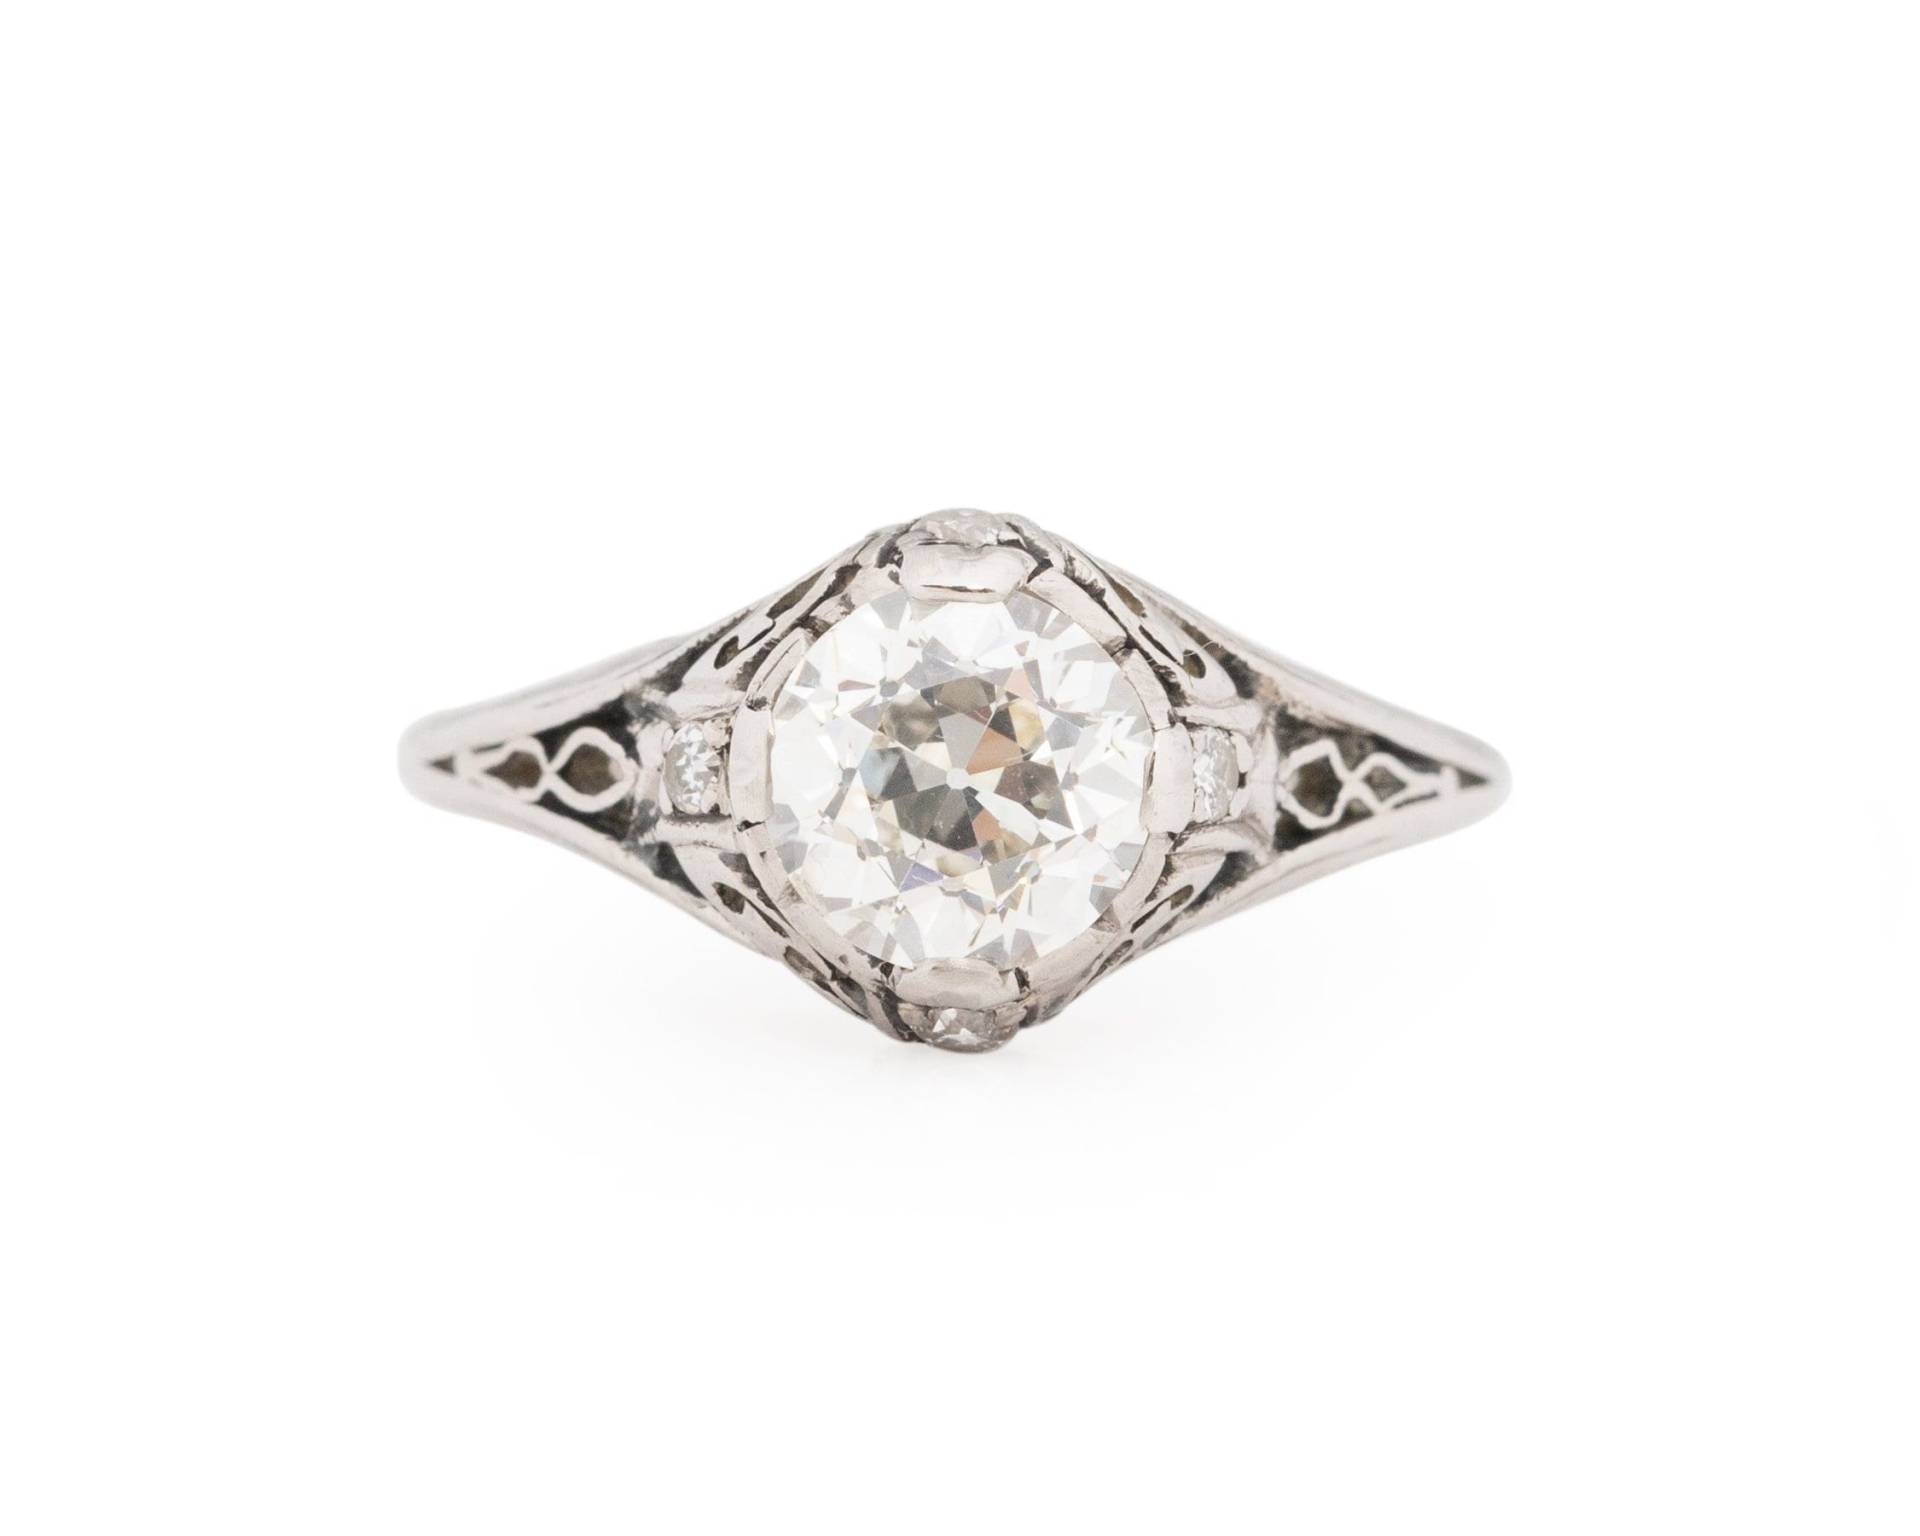 Zirka 1910 Edwardian Platin Gia Zertifiziert 1.02Ct Old European Brilliant Diamant Verlobungsring - Veg # 1859 von VermaEstateJewels